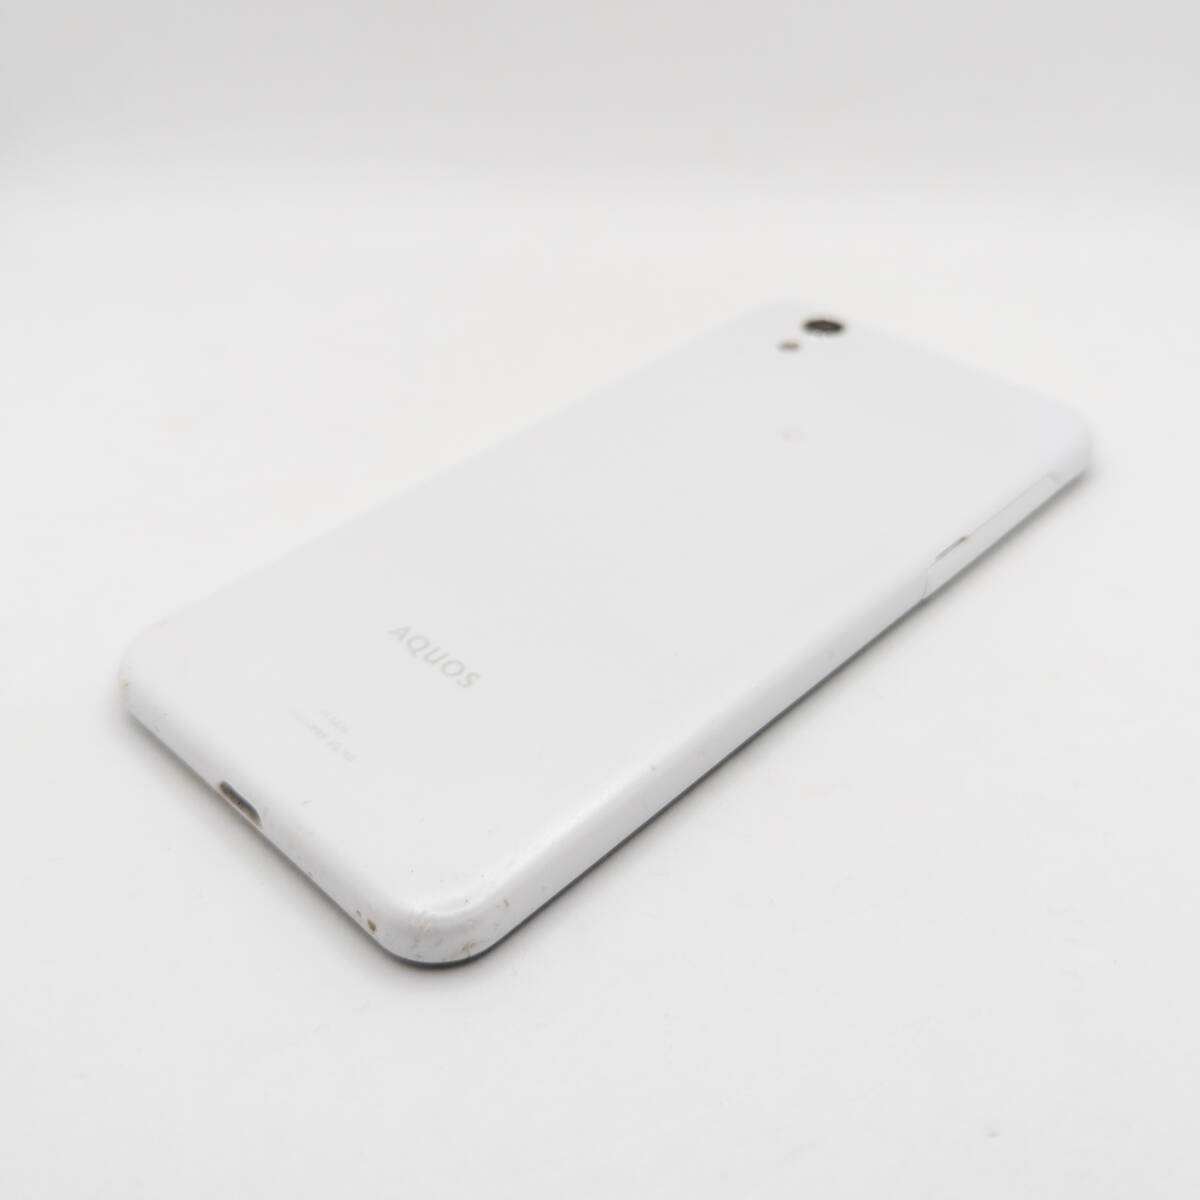 [ST-02645] SHARP AQUOS SH-M04 SIMフリー ホワイト スマートフォン スマホ シャープ Android アンドロイド 携帯電話 本体_画像5